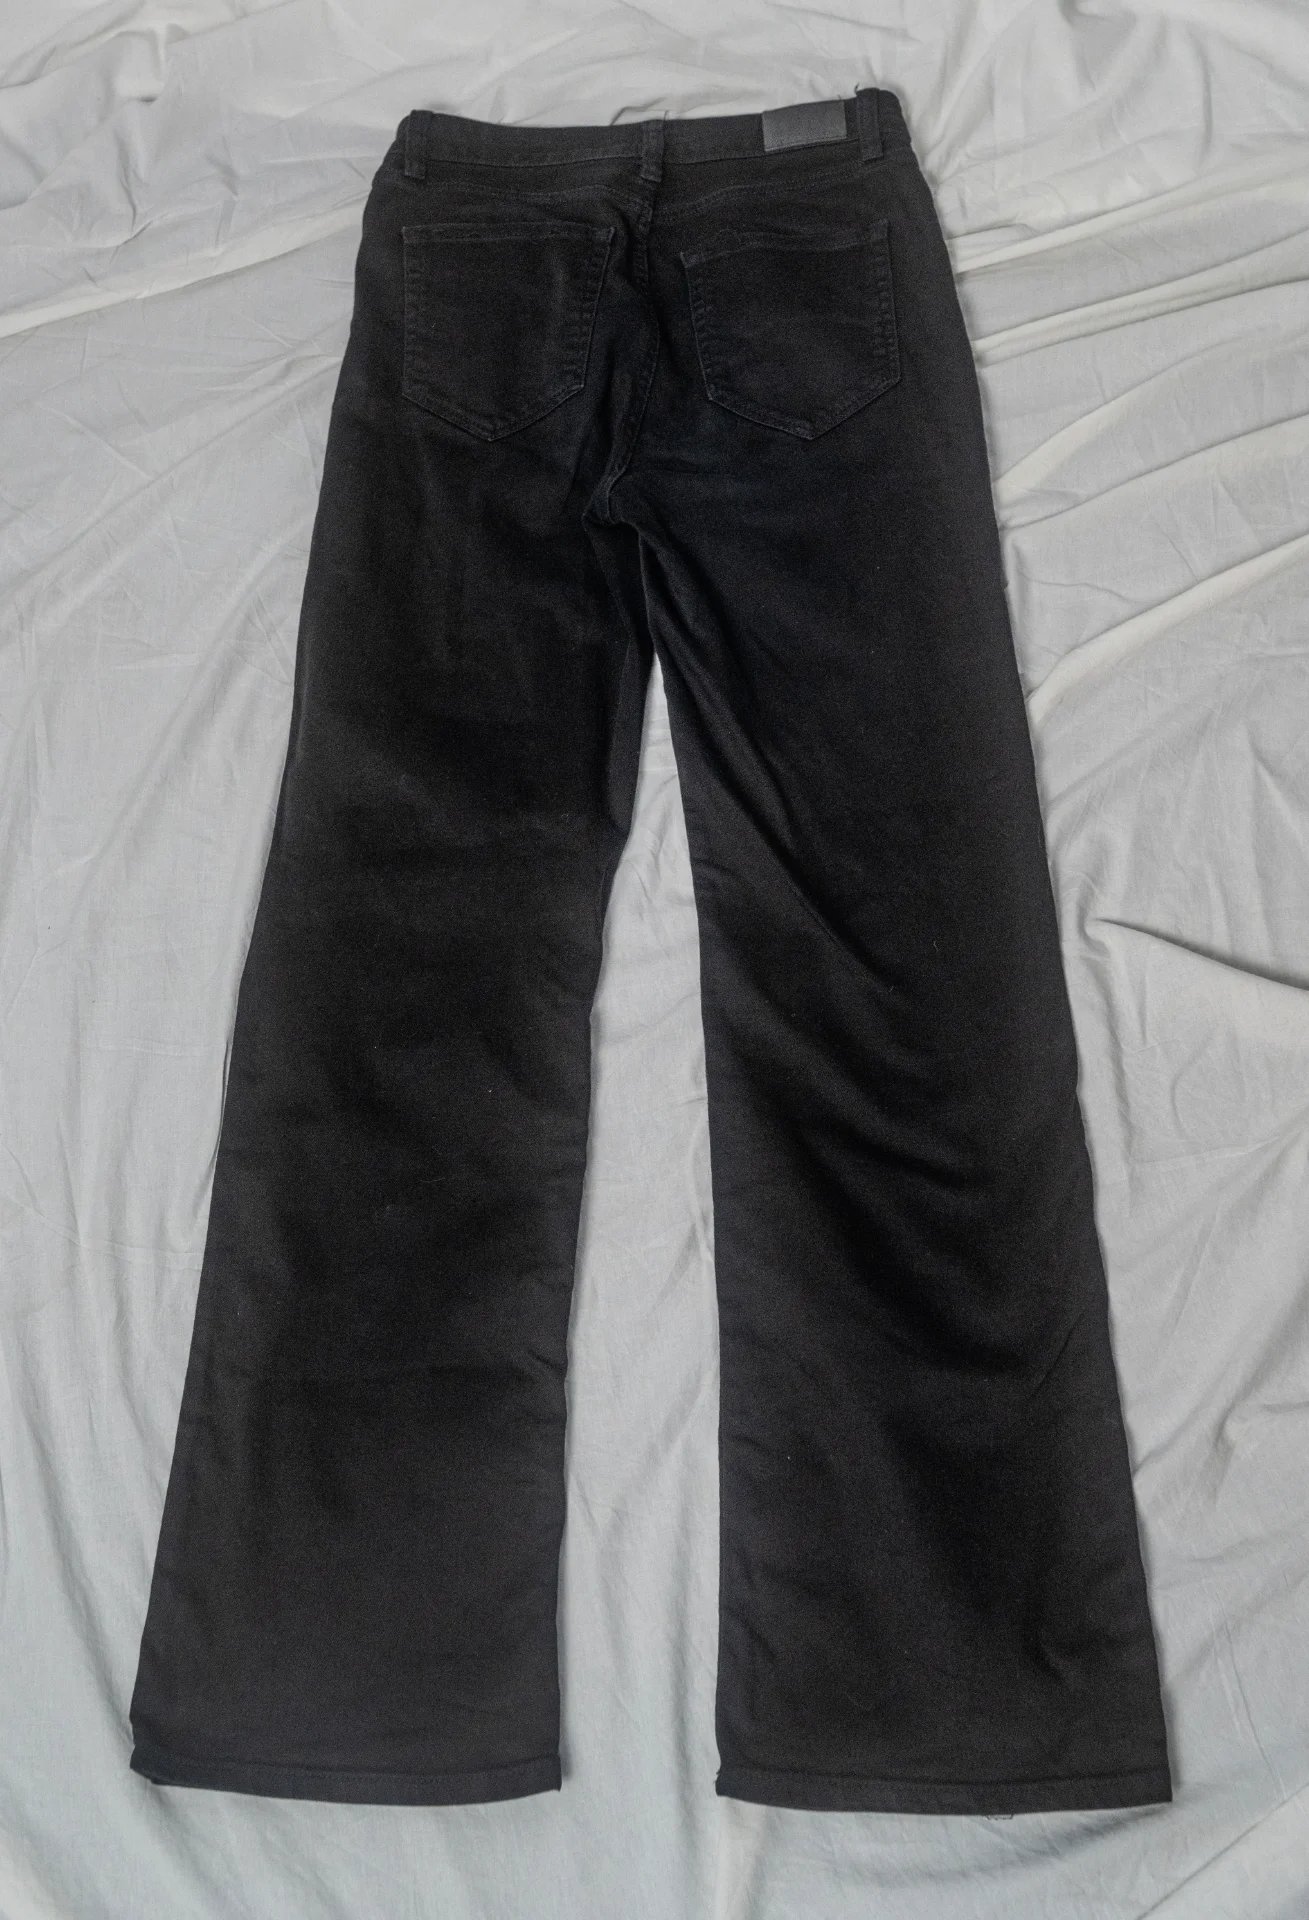 Dobber - Black Jeans (40)